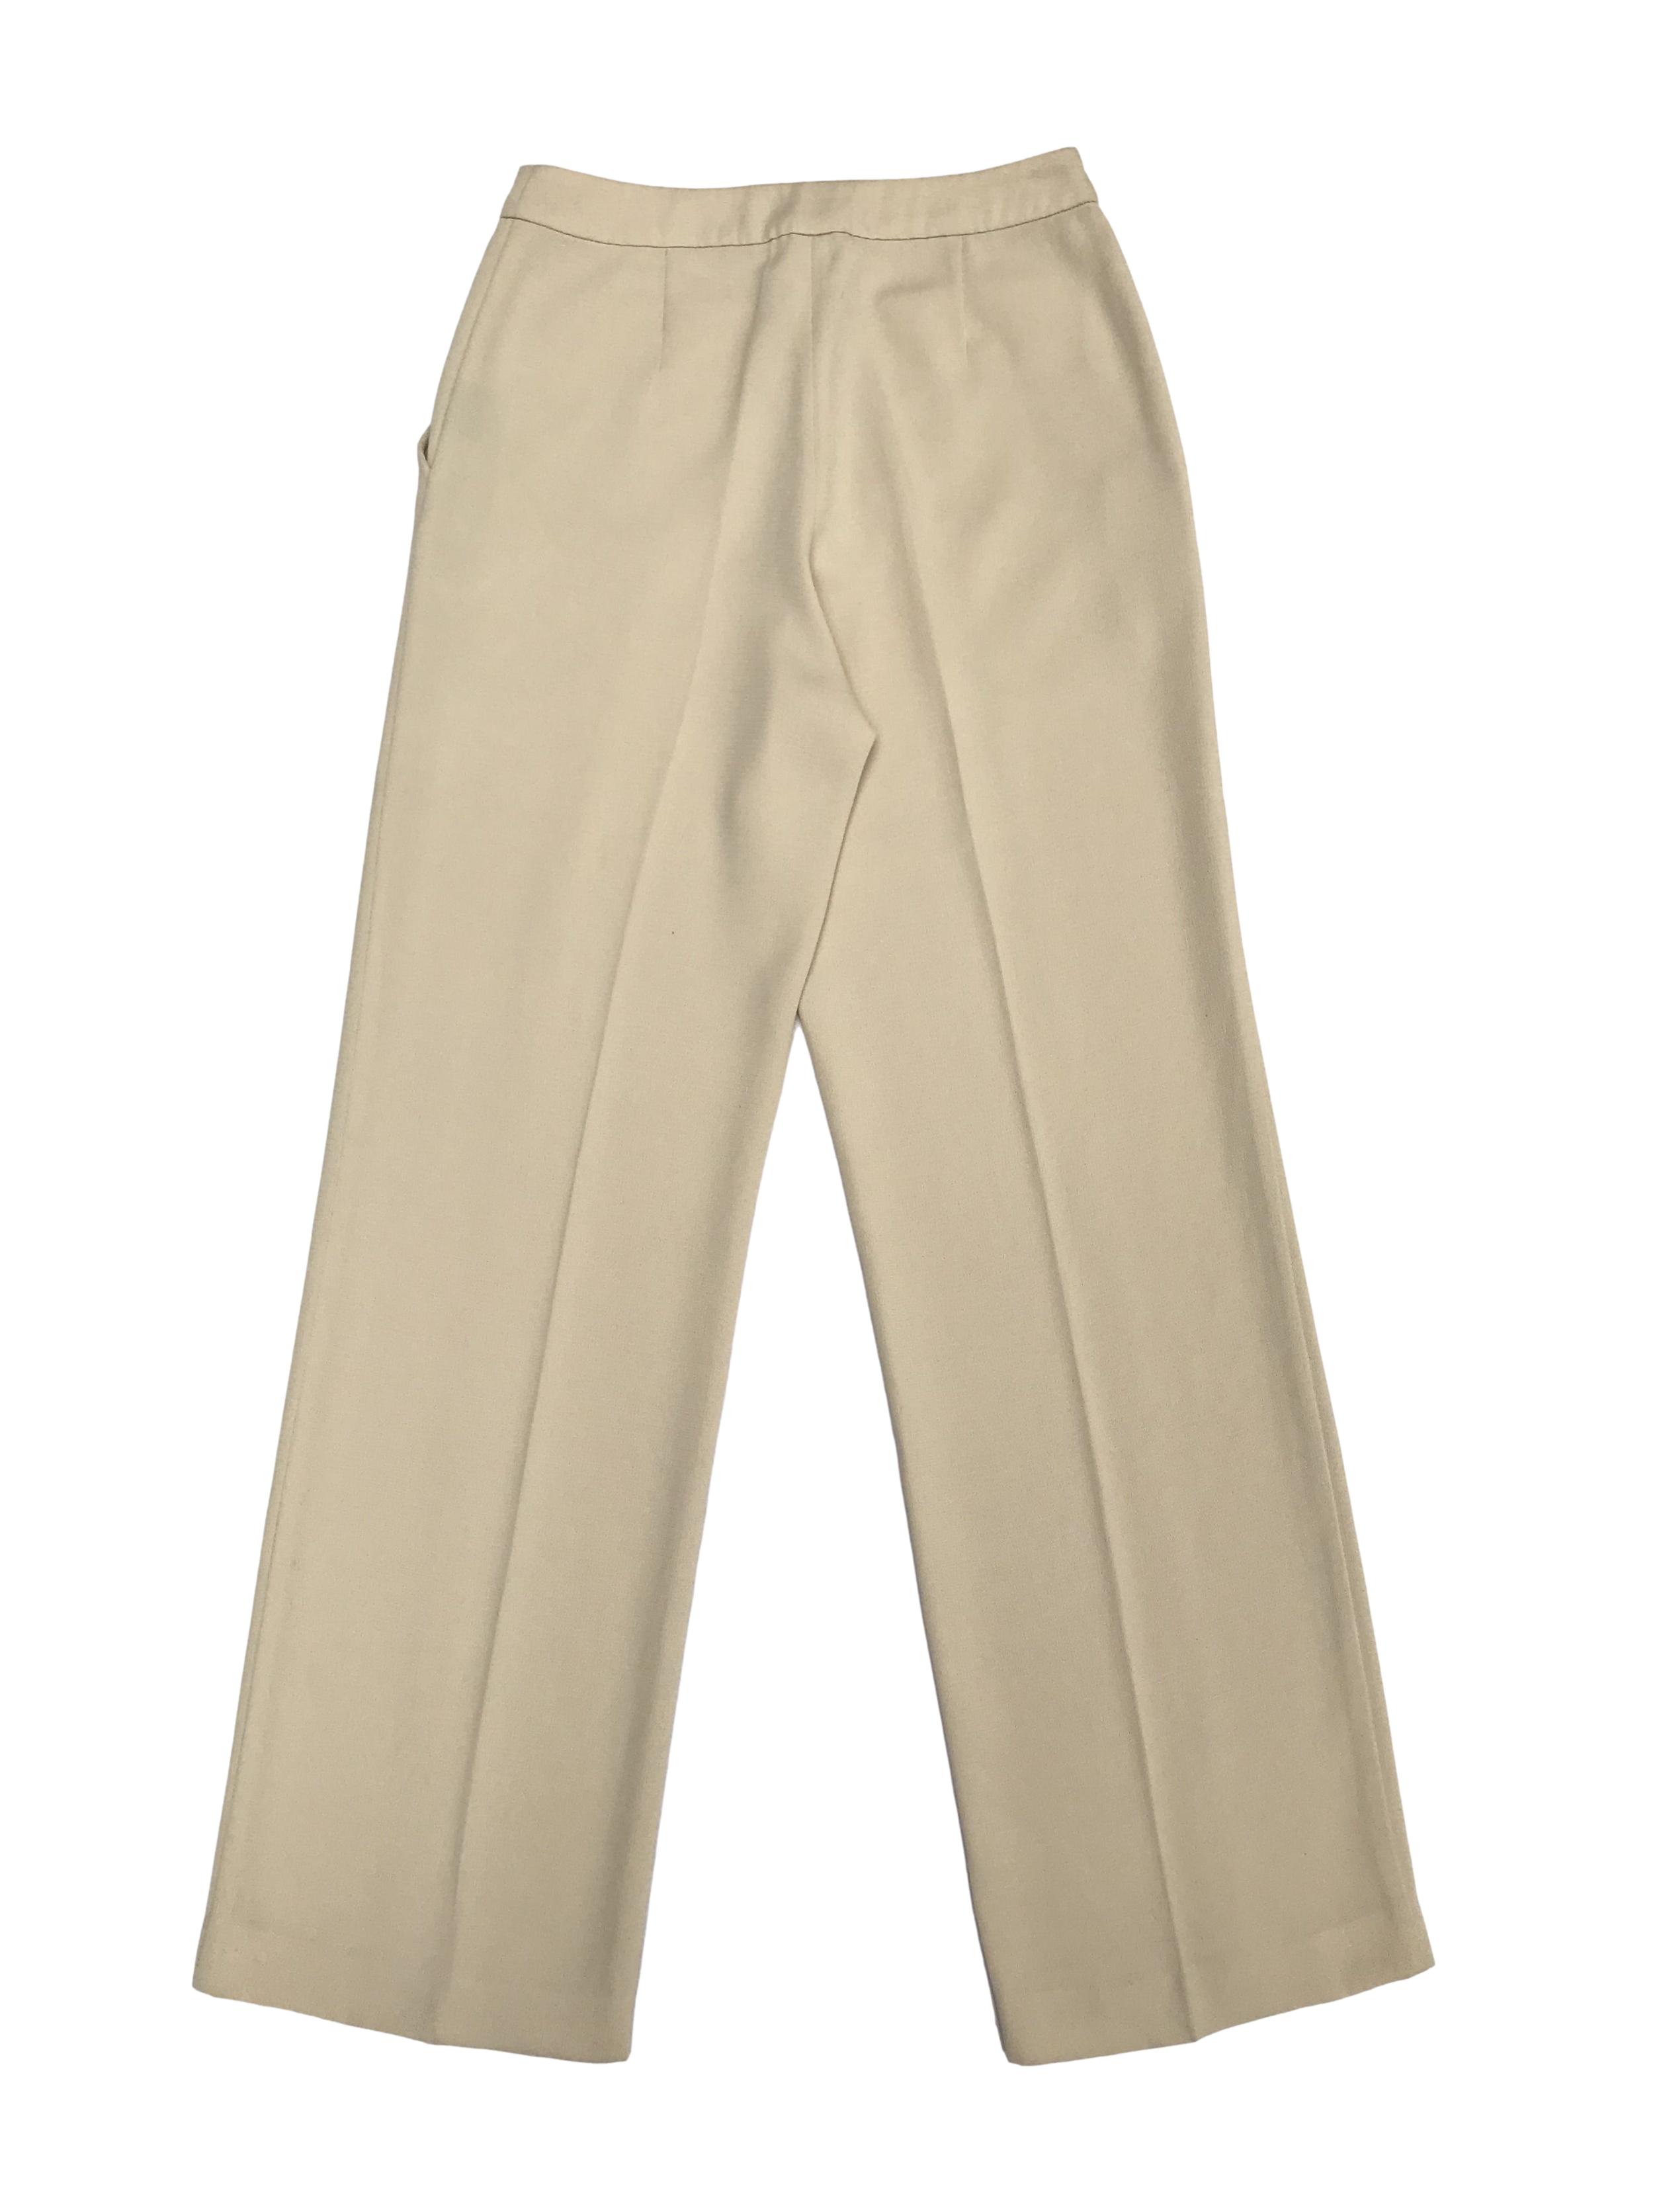 Pantalón Marquis color maíz, a la cintura, corte recto, con bolsillos laterales. ¡Lindo!  Cintura 68cm